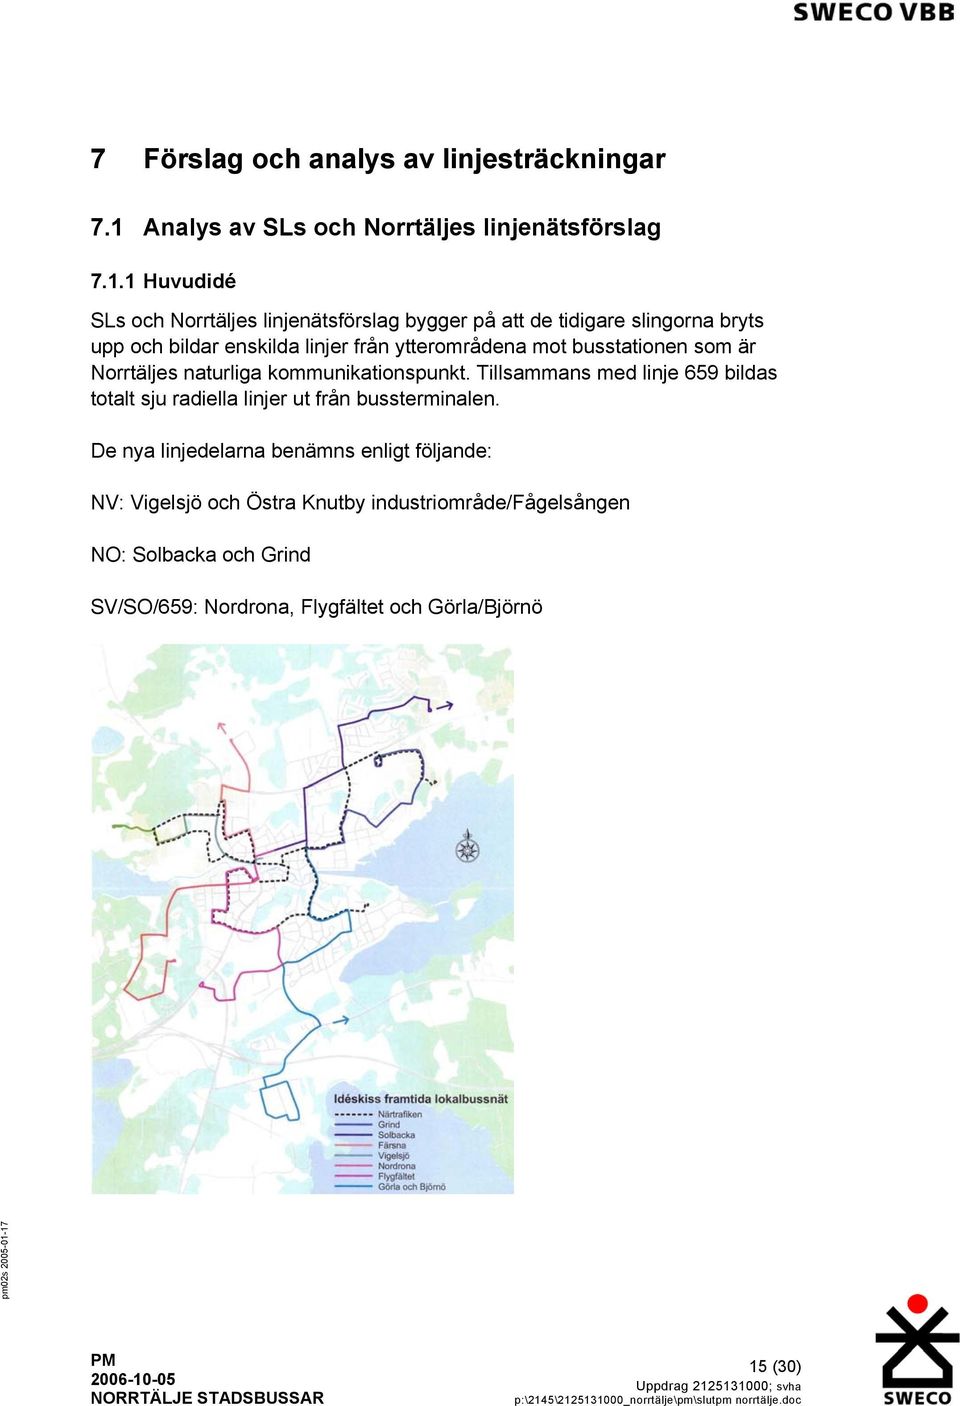 1 Huvudidé SLs och Norrtäljes linjenätsförslag bygger på att de tidigare slingorna bryts upp och bildar enskilda linjer från ytterområdena